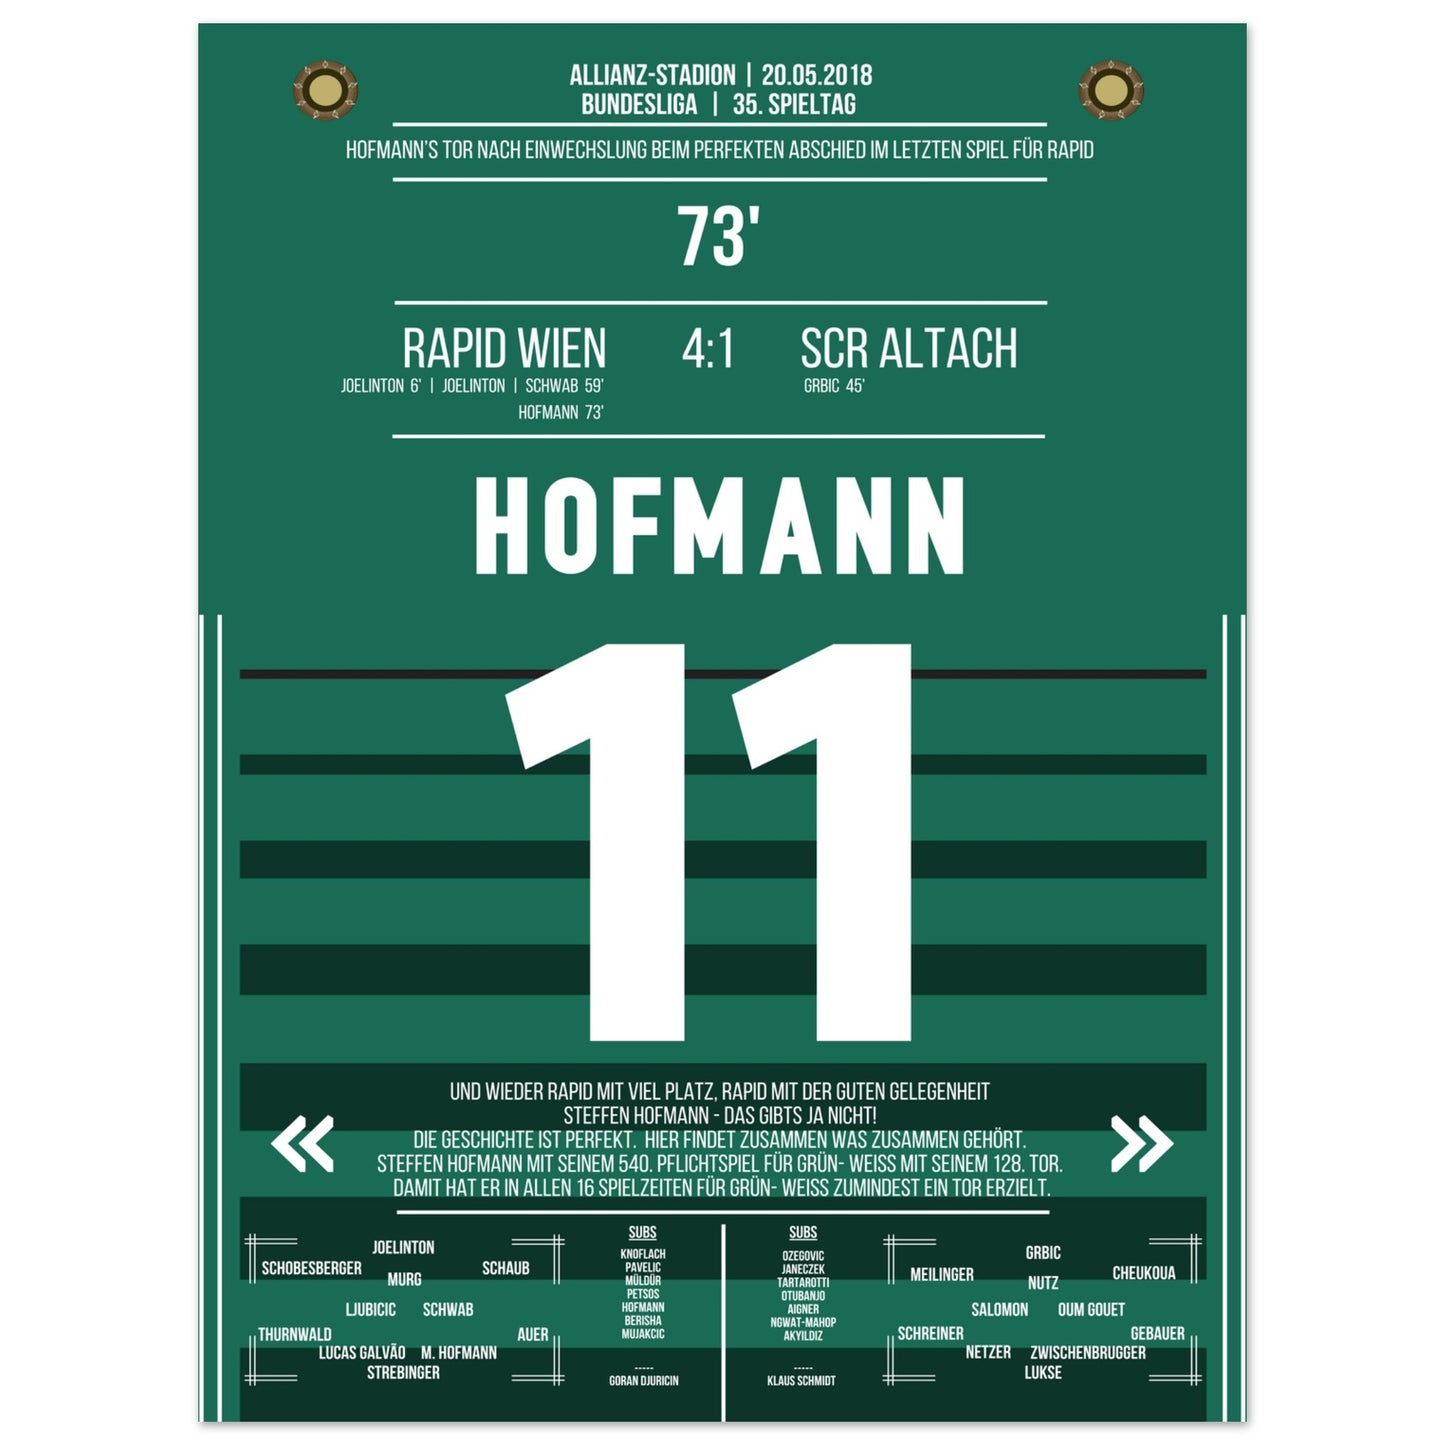 Hofmann's perfekter Abschied im letzten Spiel für Rapid 45x60-cm-18x24-Ohne-Rahmen